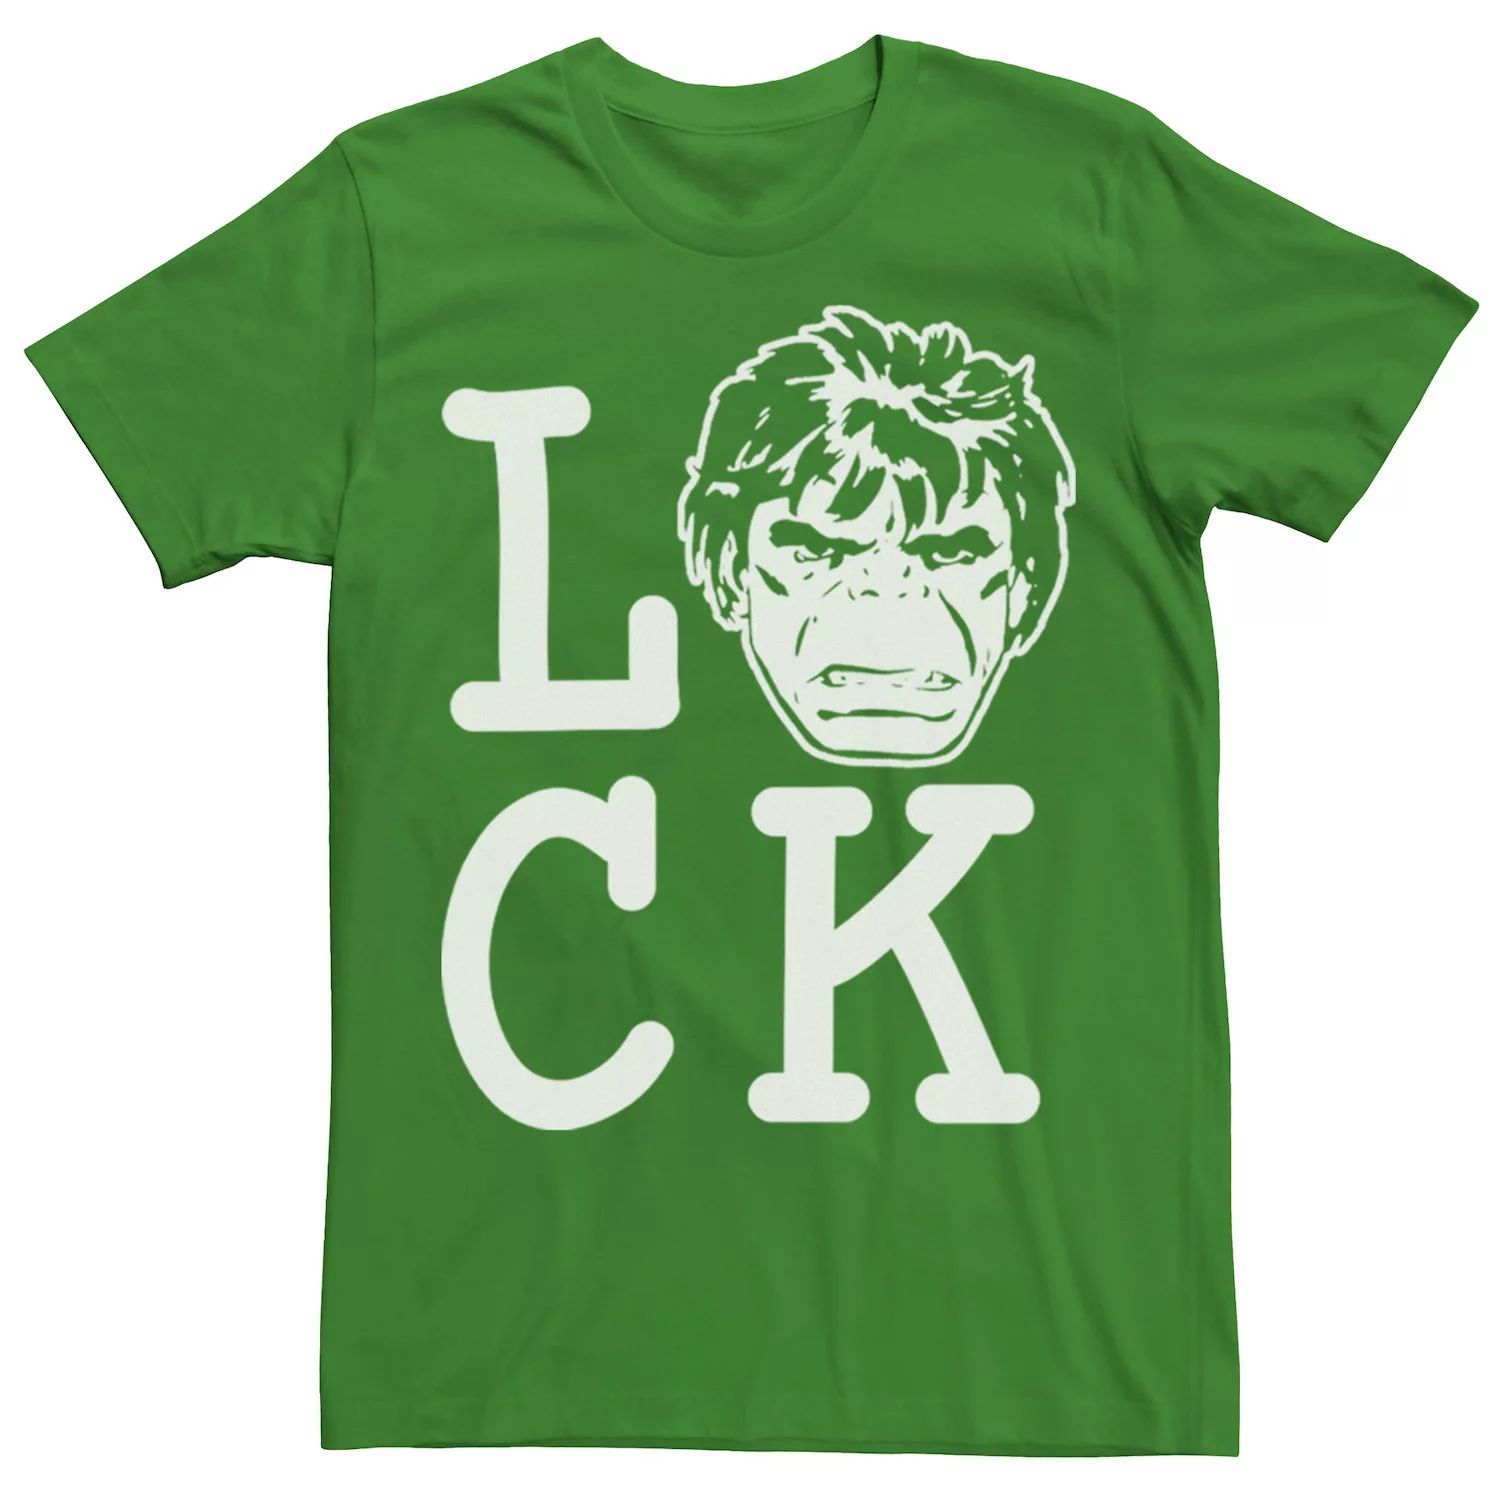 Мужская футболка с надписью «Hulk Lucky» ко Дню Святого Патрика Marvel мужская футболка с надписью hulk lucky ко дню святого патрика marvel